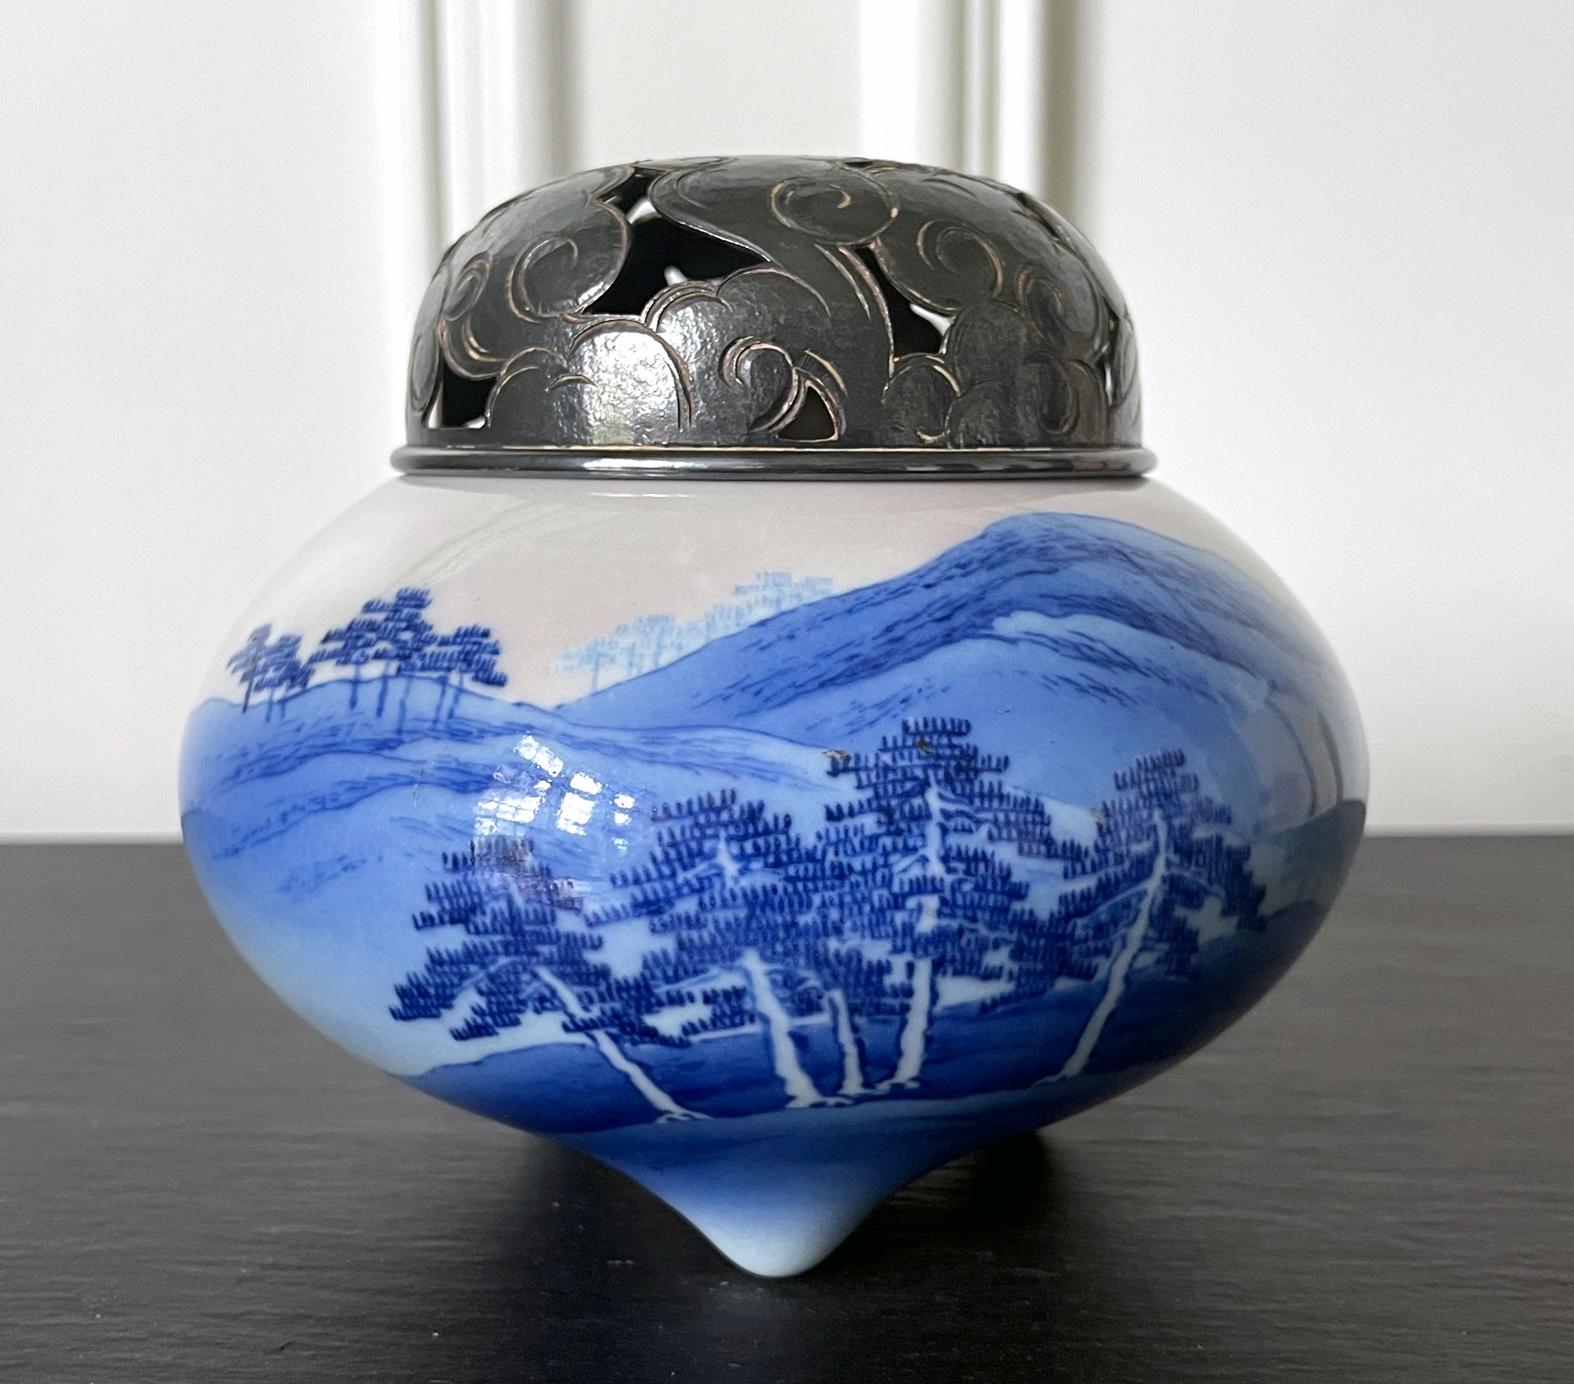 Ein dreibeiniger Keramik-Räucherstäbchenbrenner (koro) des kaiserlichen japanischen Töpfers Makuzu Kozan (1842-1916) aus der späten Meiji- bis zur beginnenden Taisho-Periode (1890-1910er). Ein schönes Beispiel für das Werk des Künstlers aus der